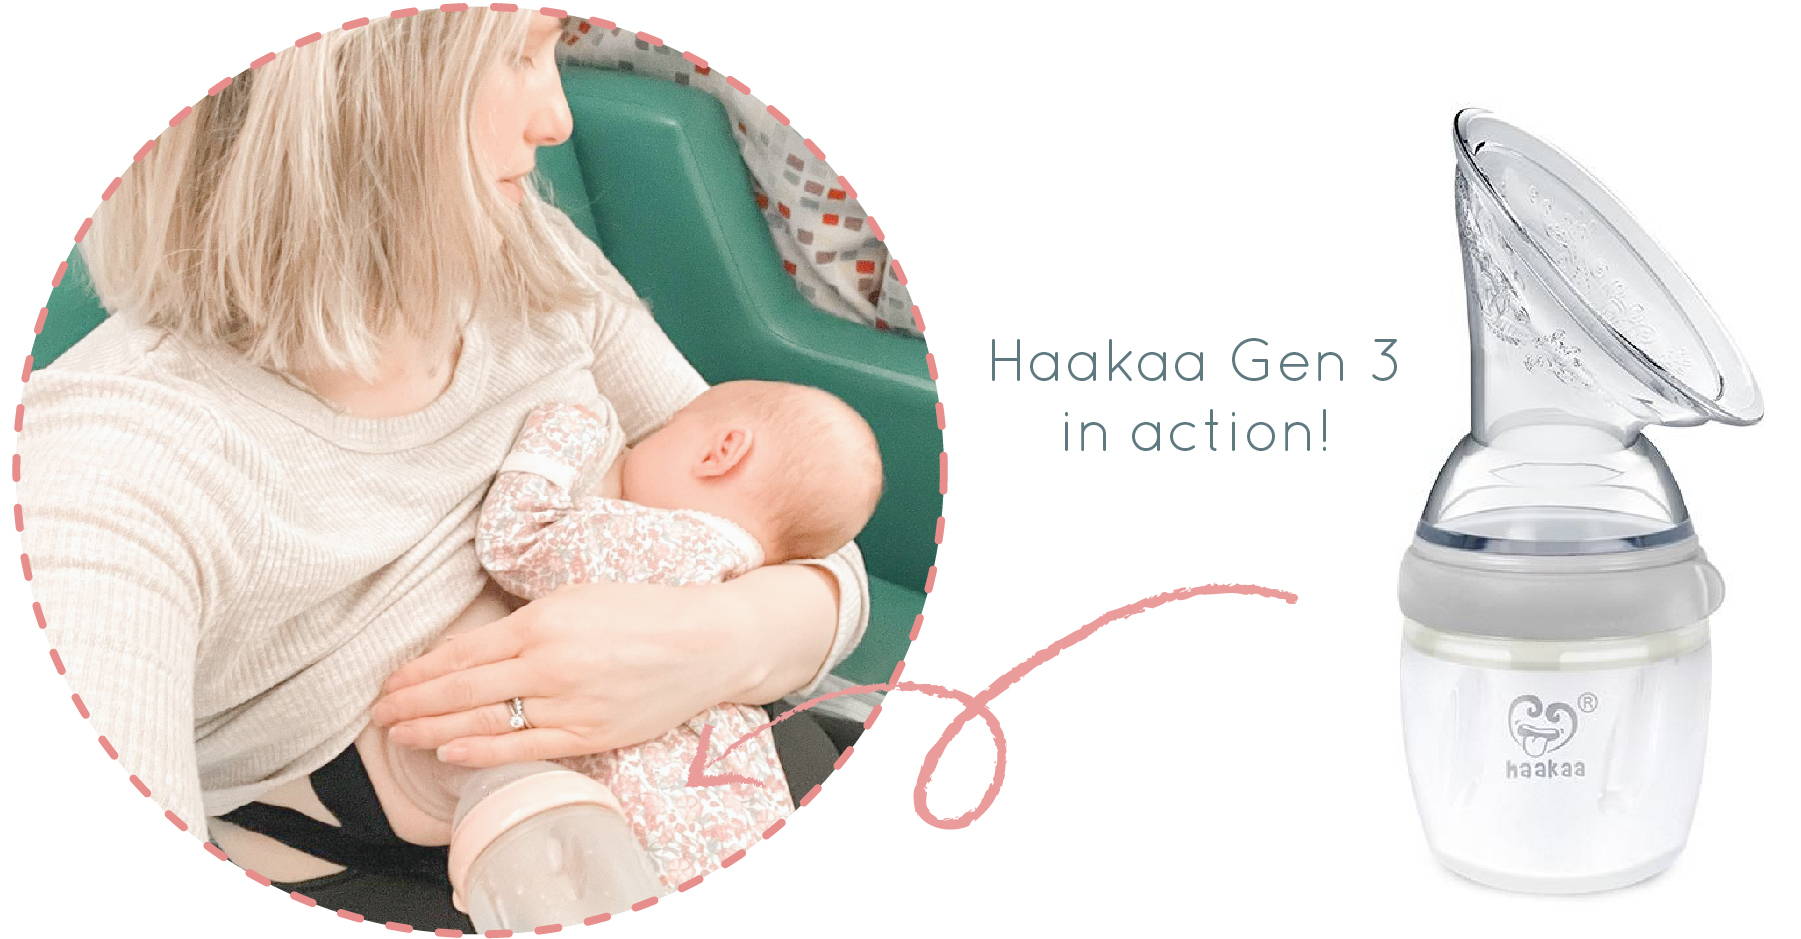 So when CAN I use my Haakaa? - Milk and Motherhood